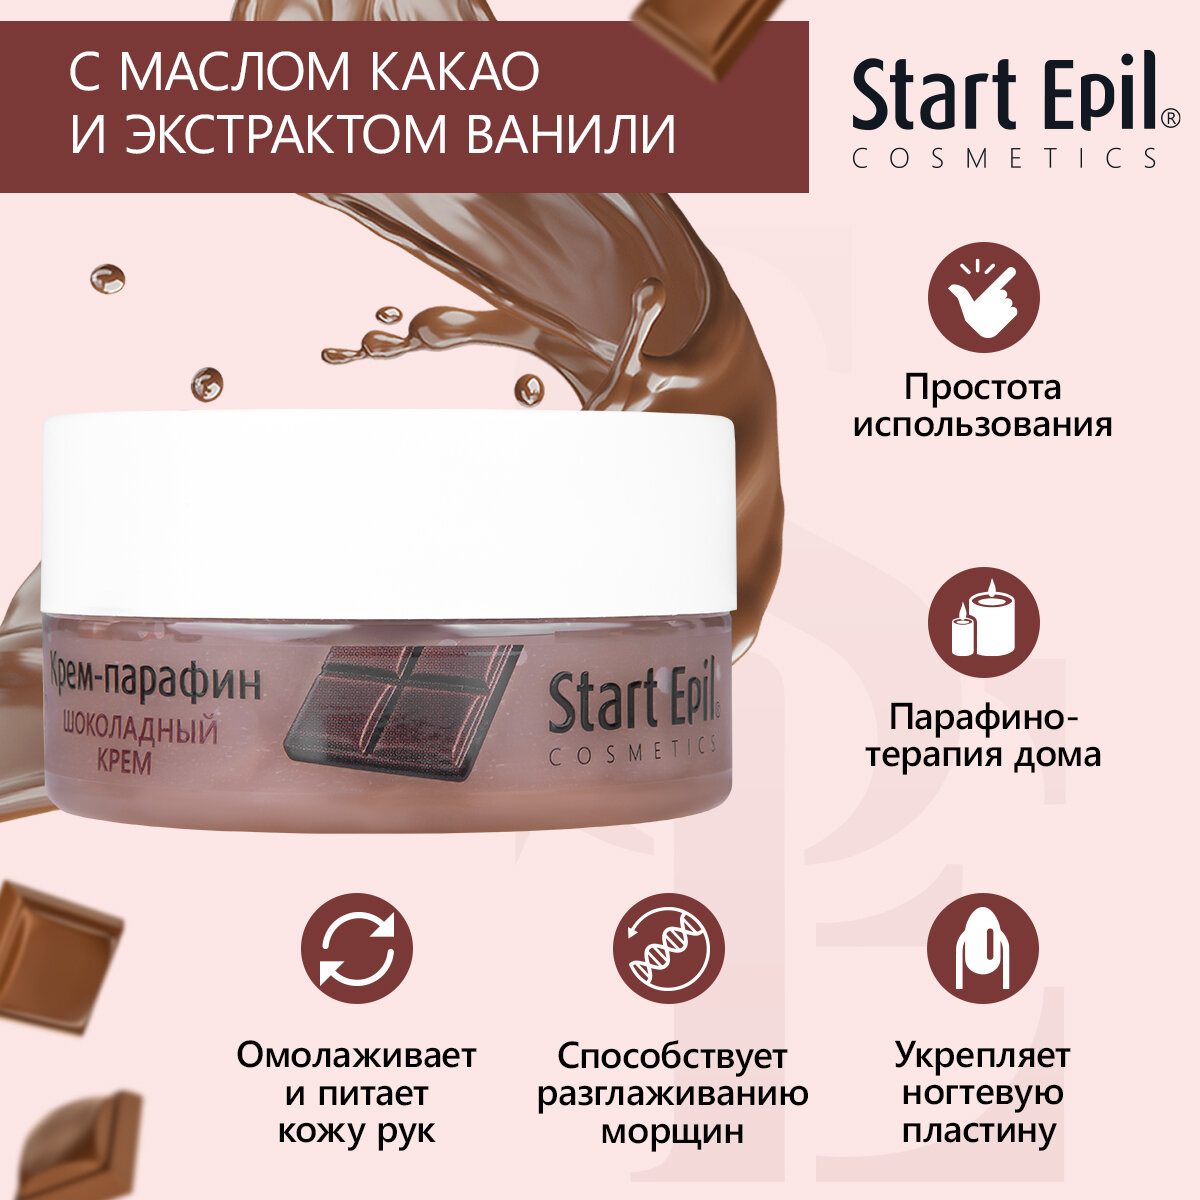 Start Epil Крем-парафин Шоколадный крем, 150 мл